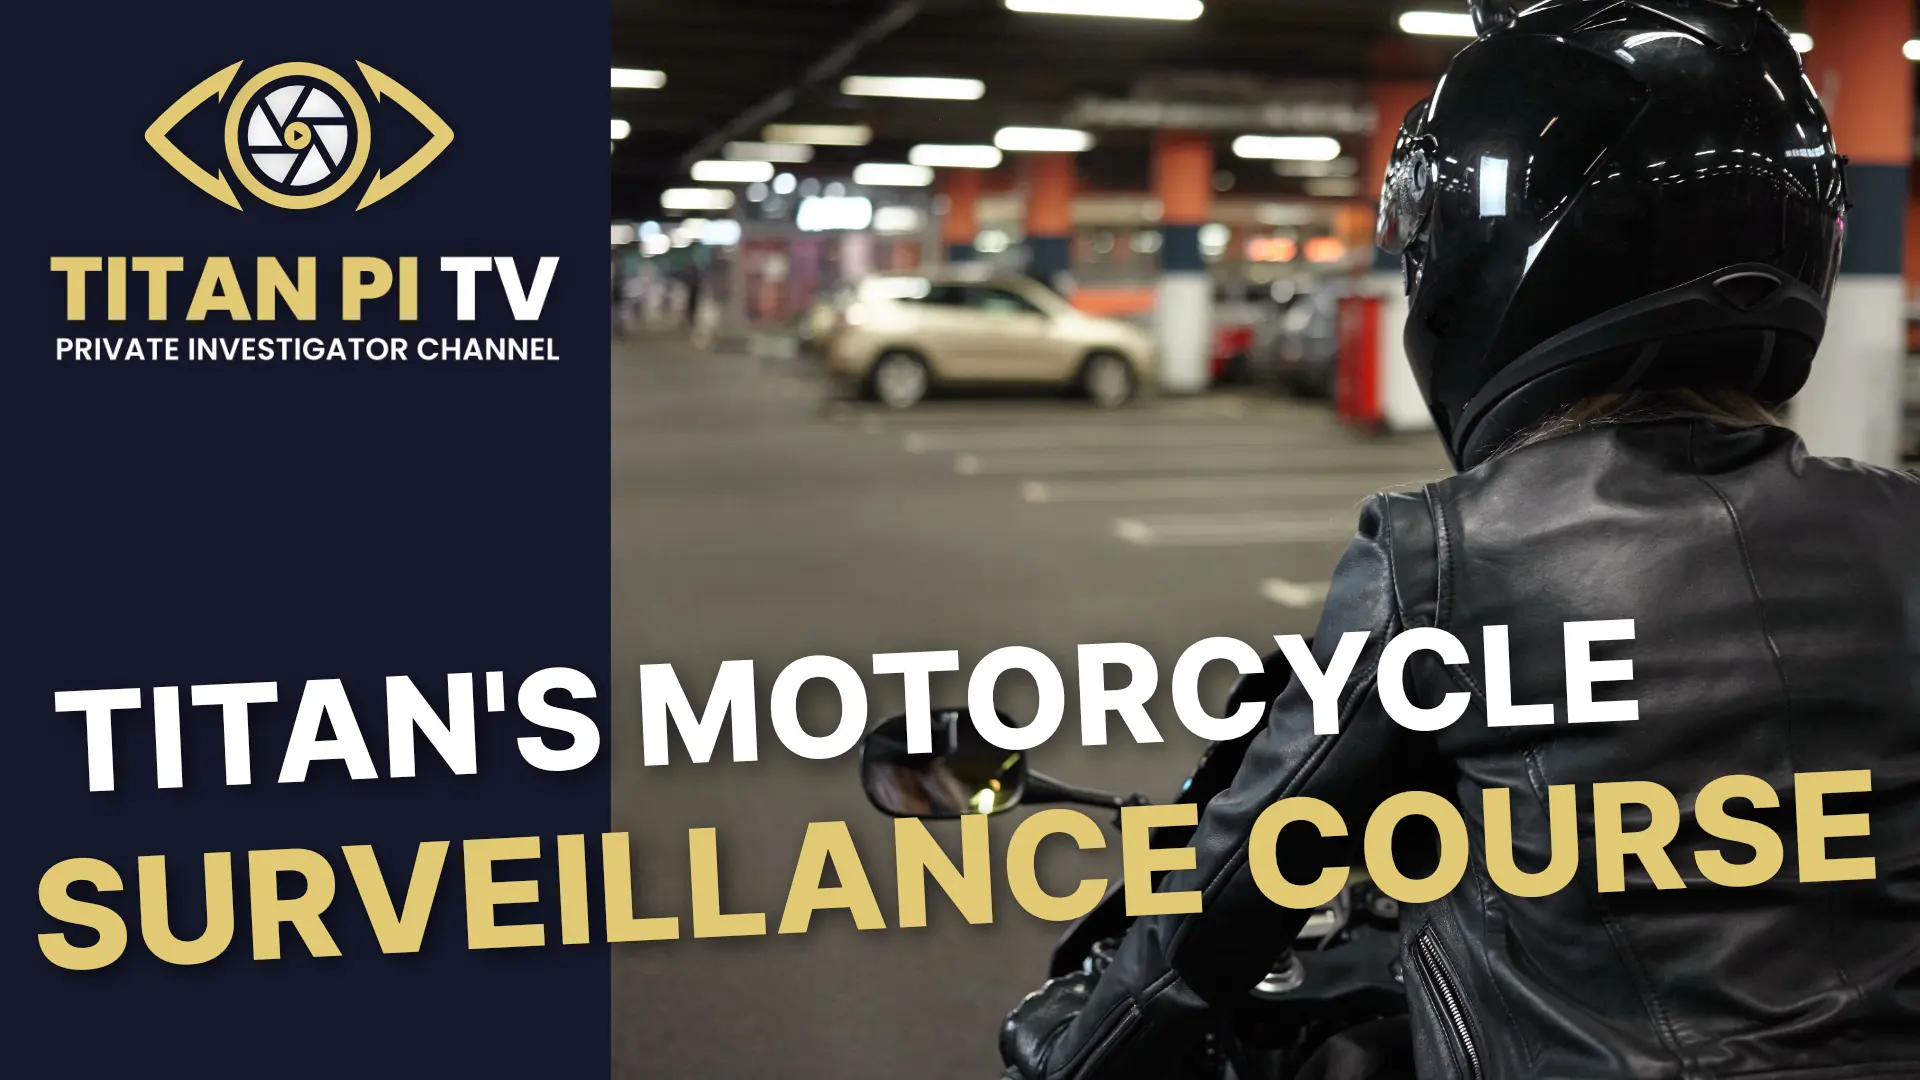 Titan Motorcycle Surveillance Course E62 - Titan PI TV